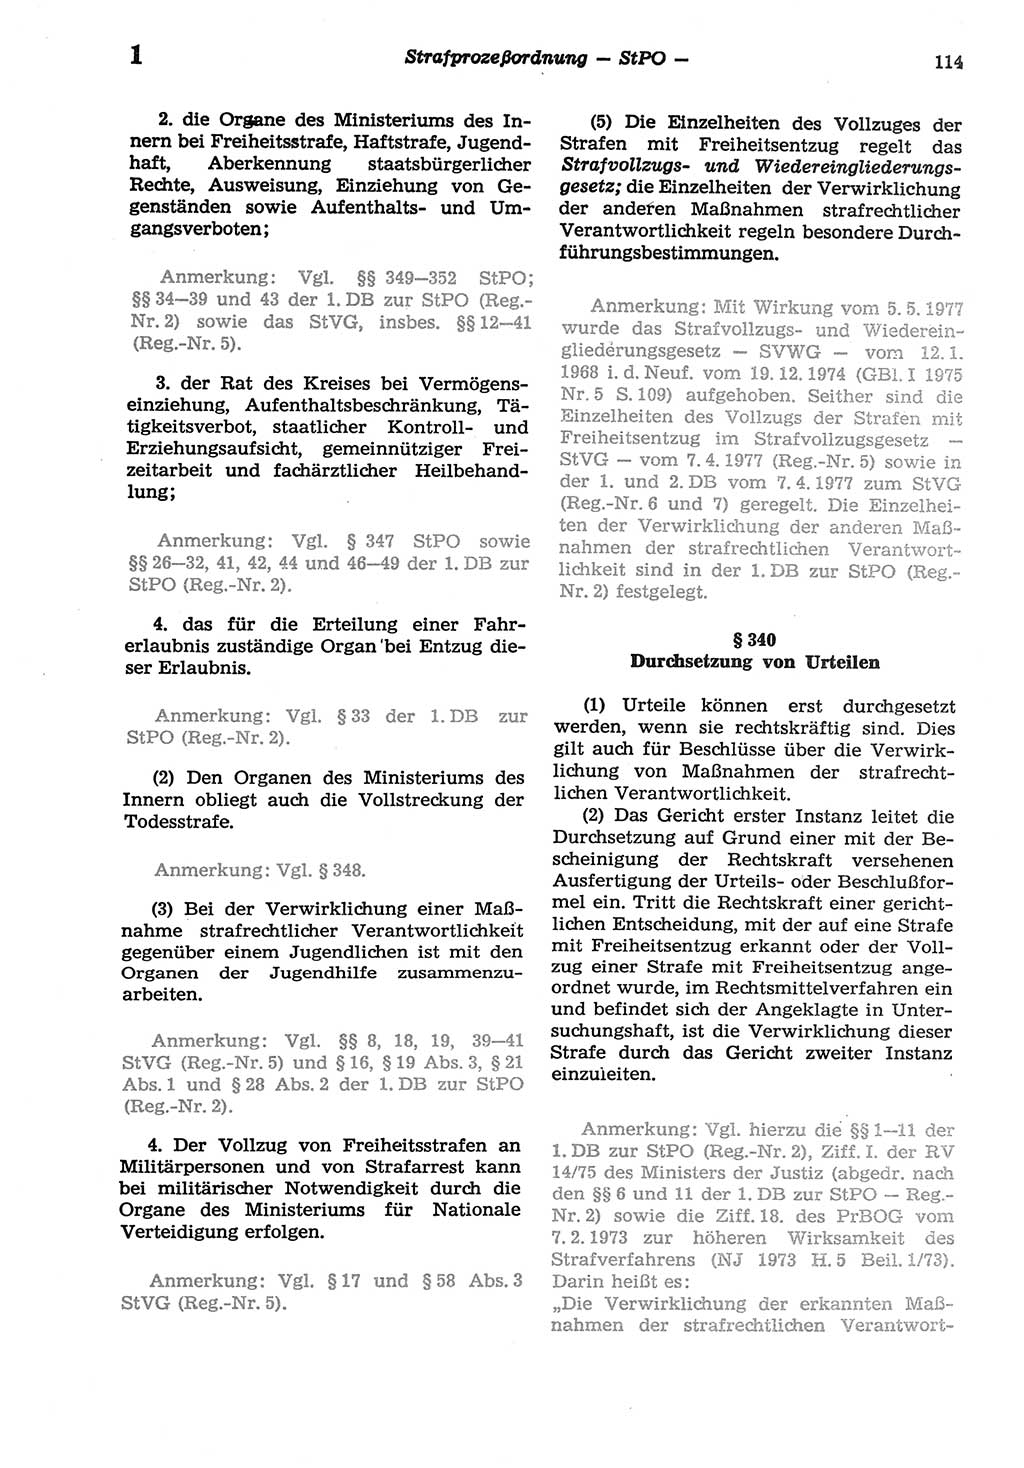 Strafprozeßordnung (StPO) der Deutschen Demokratischen Republik (DDR) sowie angrenzende Gesetze und Bestimmungen 1977, Seite 114 (StPO DDR Ges. Best. 1977, S. 114)